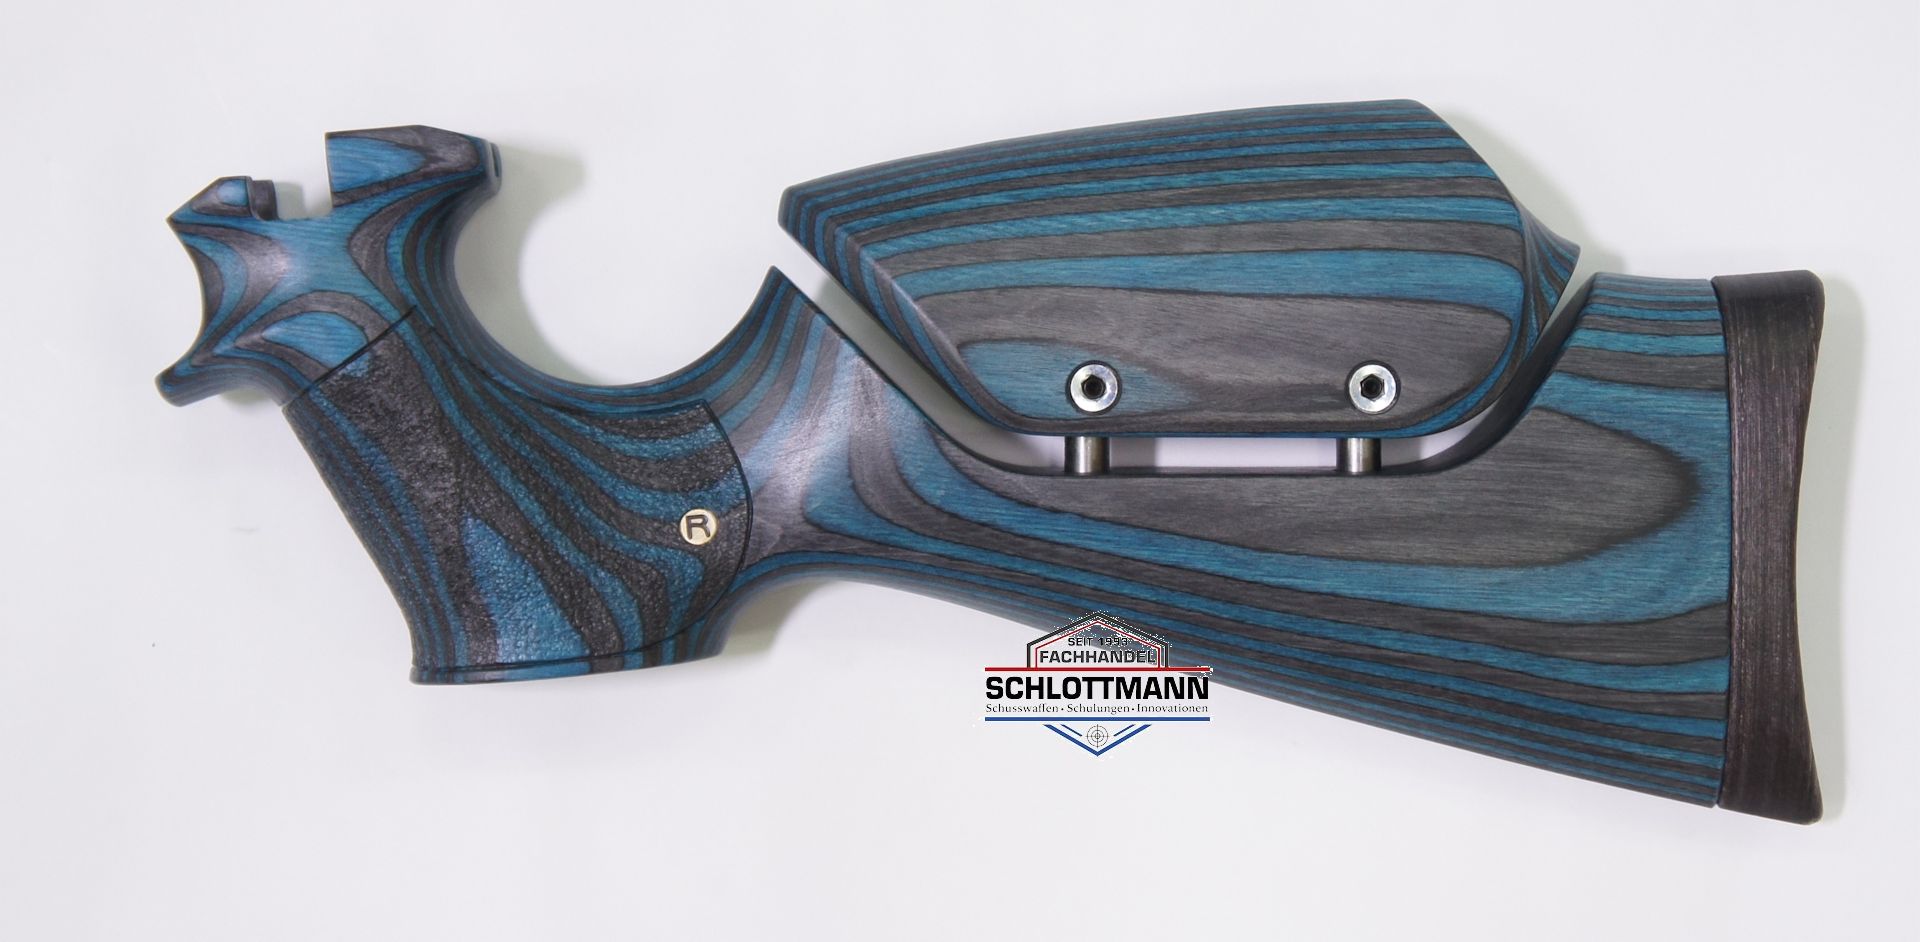 Anschlagschaft fr Luftpistole airmaX PP700S-A aus schwarz-blauem Schichtholz mit verstellbarer Schaftbacke